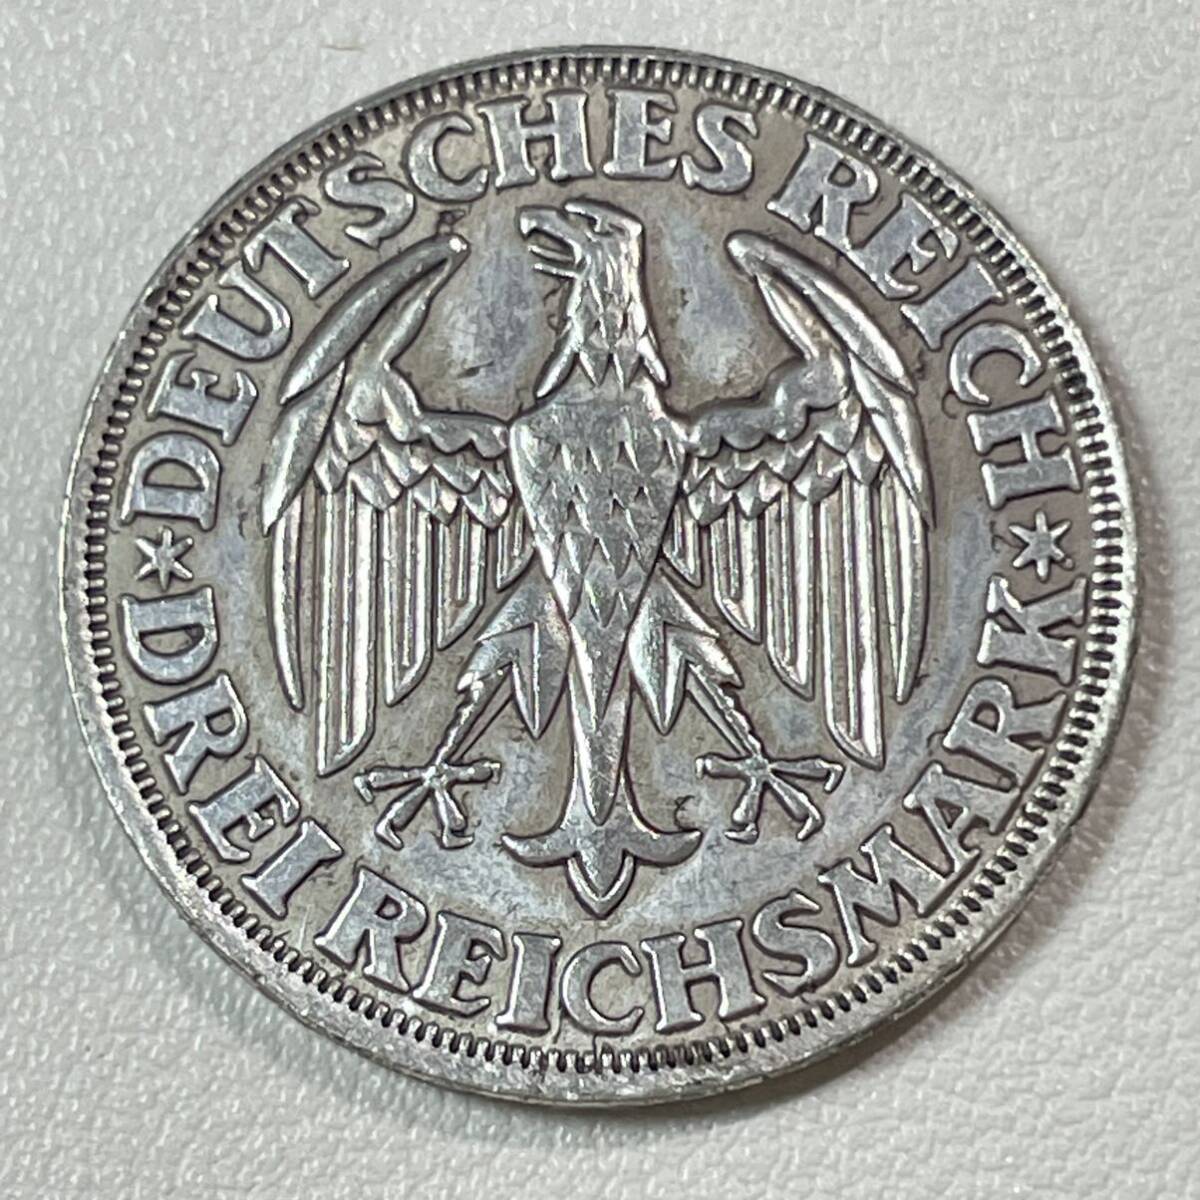 ドイツ 硬貨 古銭 ワイマール共和国 1928年 ディンケルスビュール創立 1000 周年 農場労働者 鷲 記念幣 コイン 重9.95gの画像1